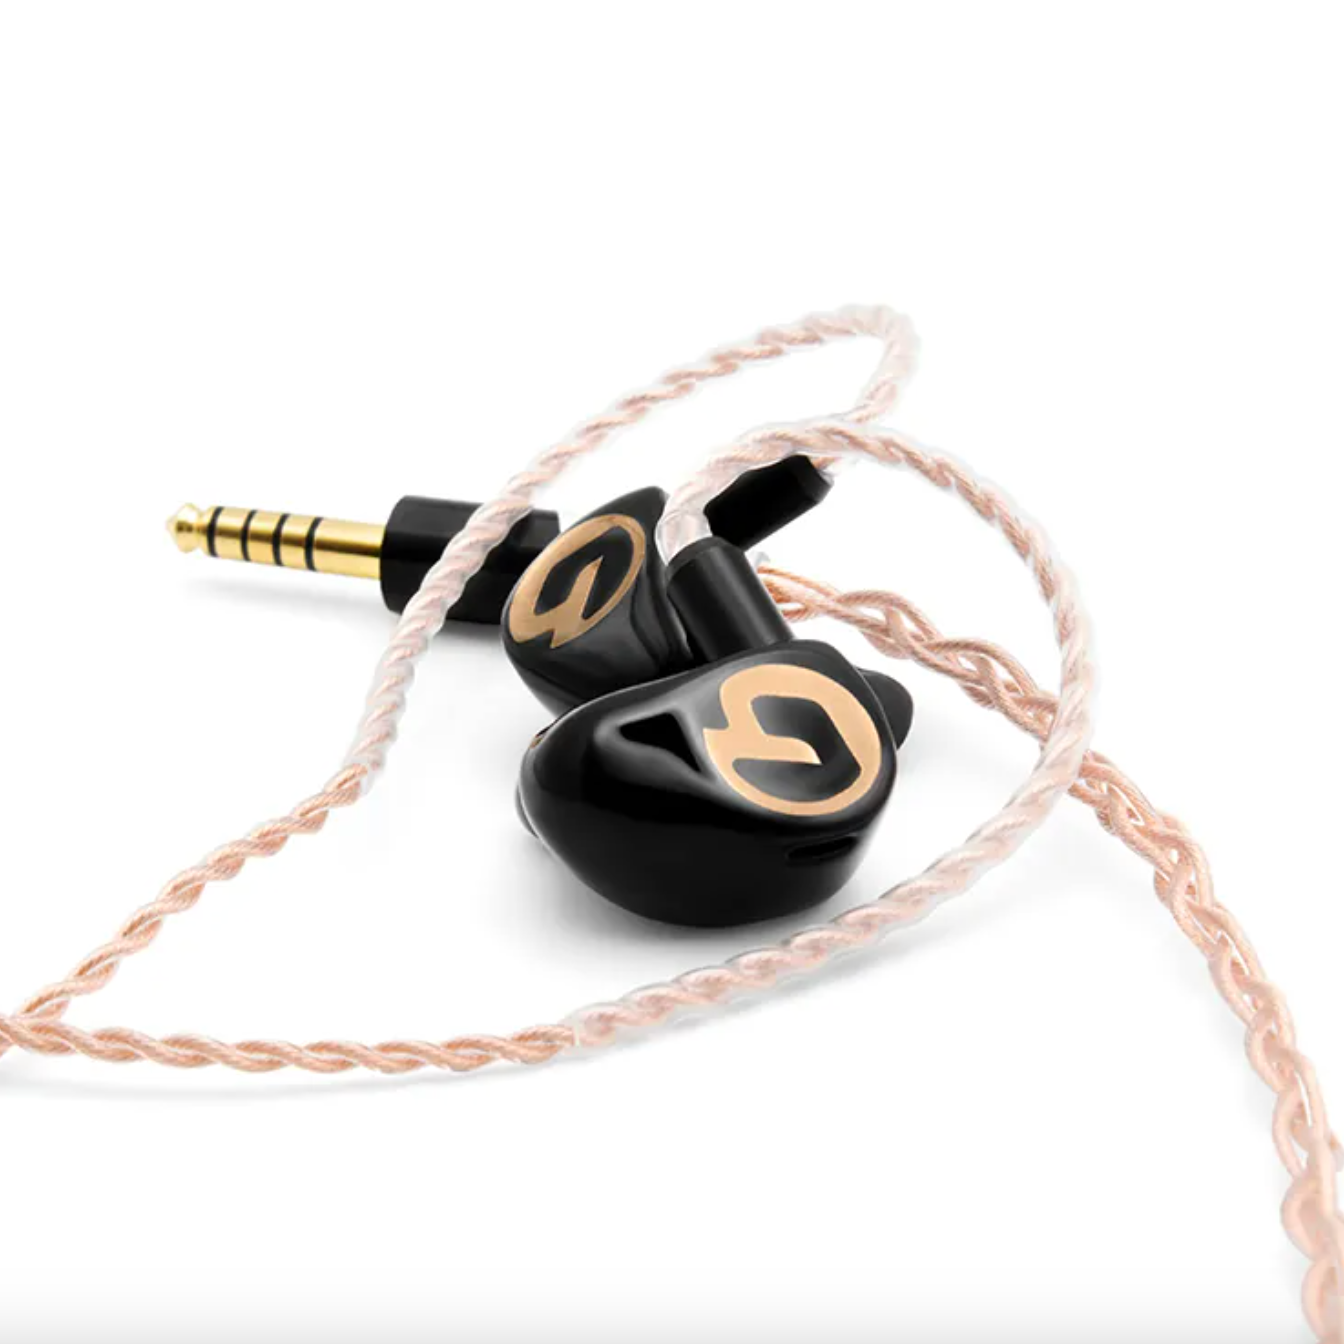 Gaudio Tian in-ear headphones